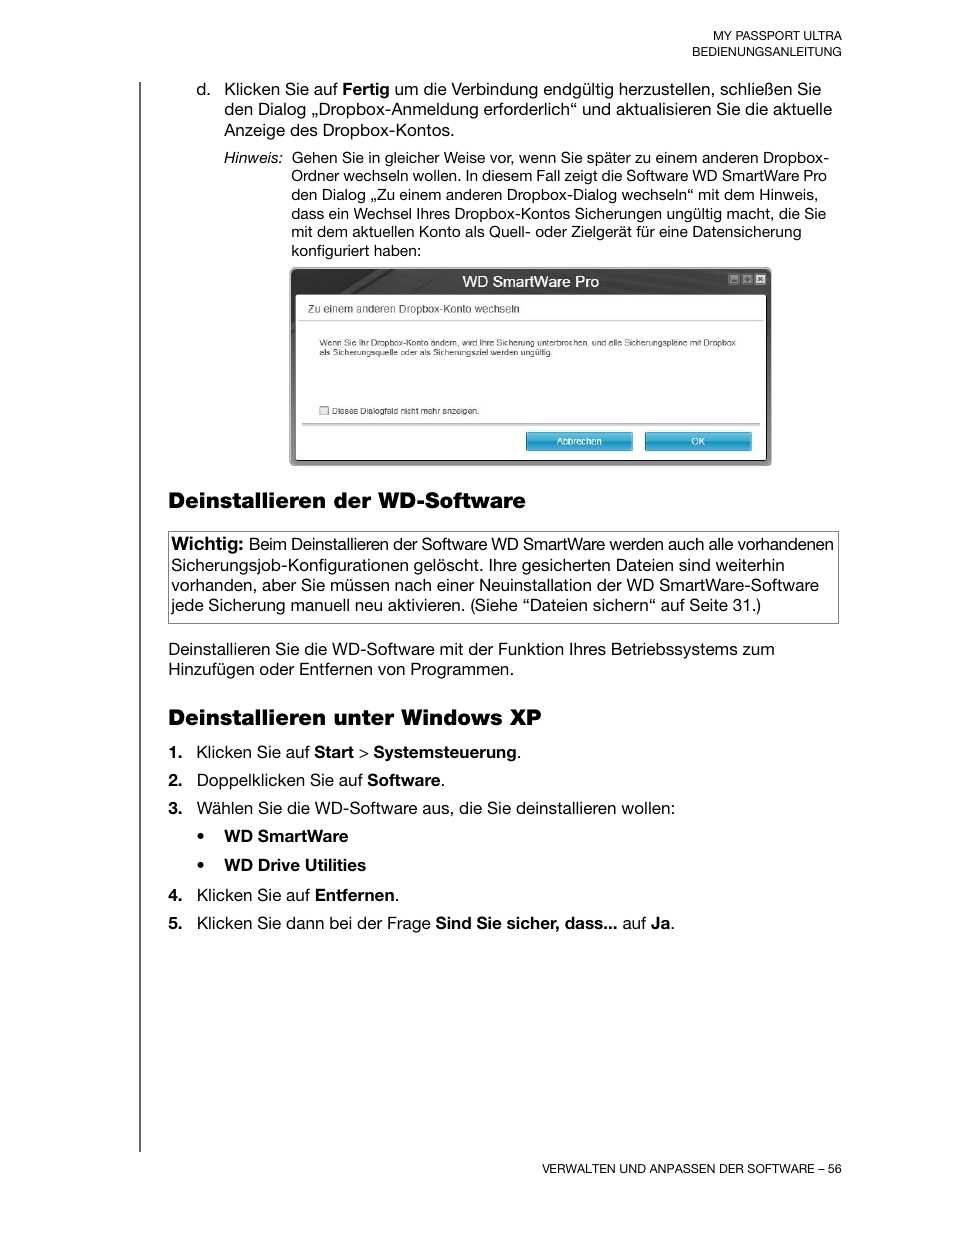 Deinstallieren der wd-software, Deinstallieren unter windows xp | Western Digital My Passport Ultra (Unencrypted drives) User Manual Benutzerhandbuch | Seite 60 / 81